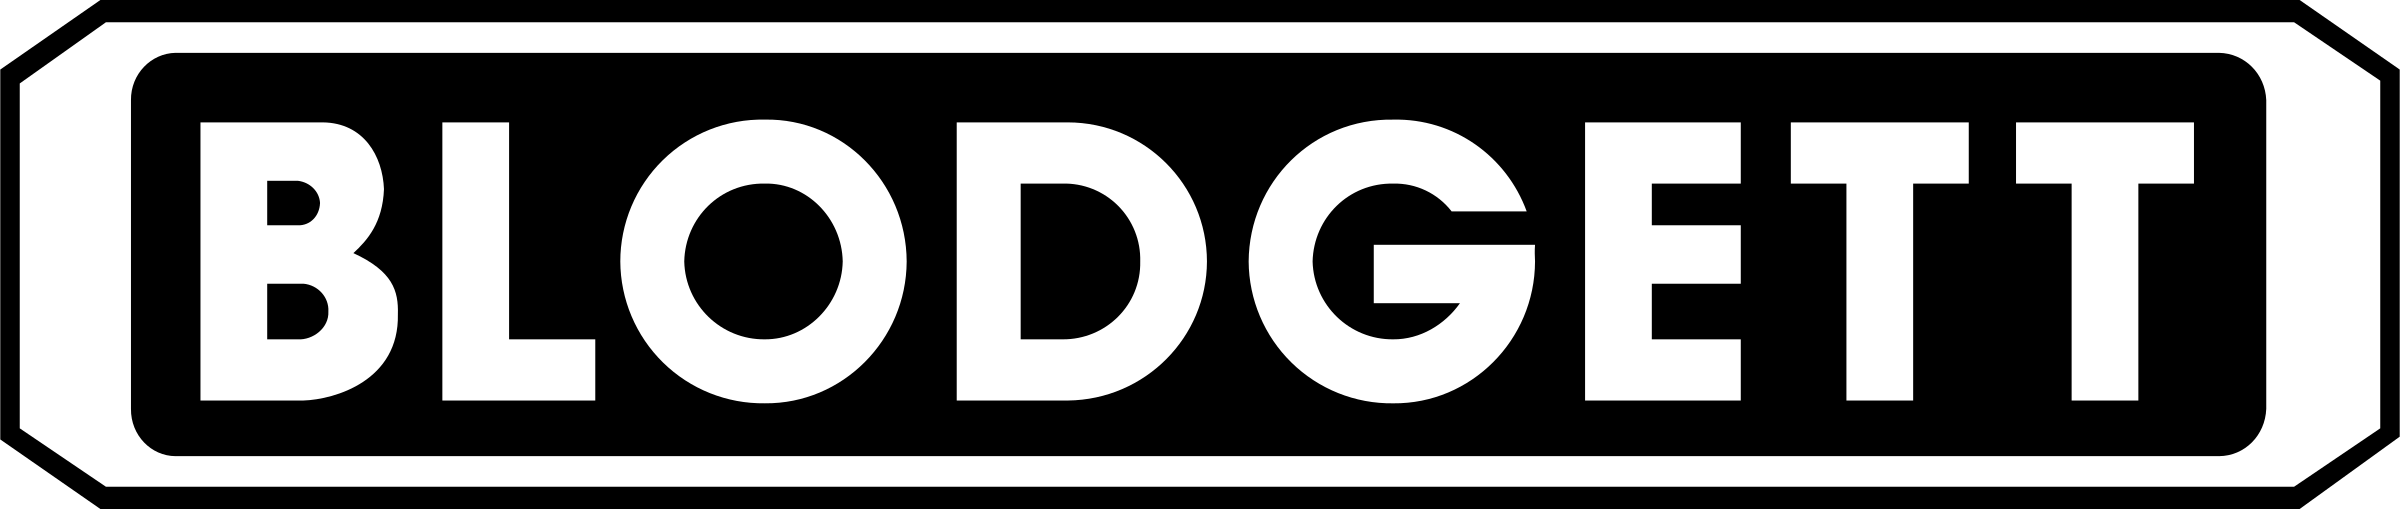 Blodgett Logo - Blodgett Logo PNG Transparent & SVG Vector